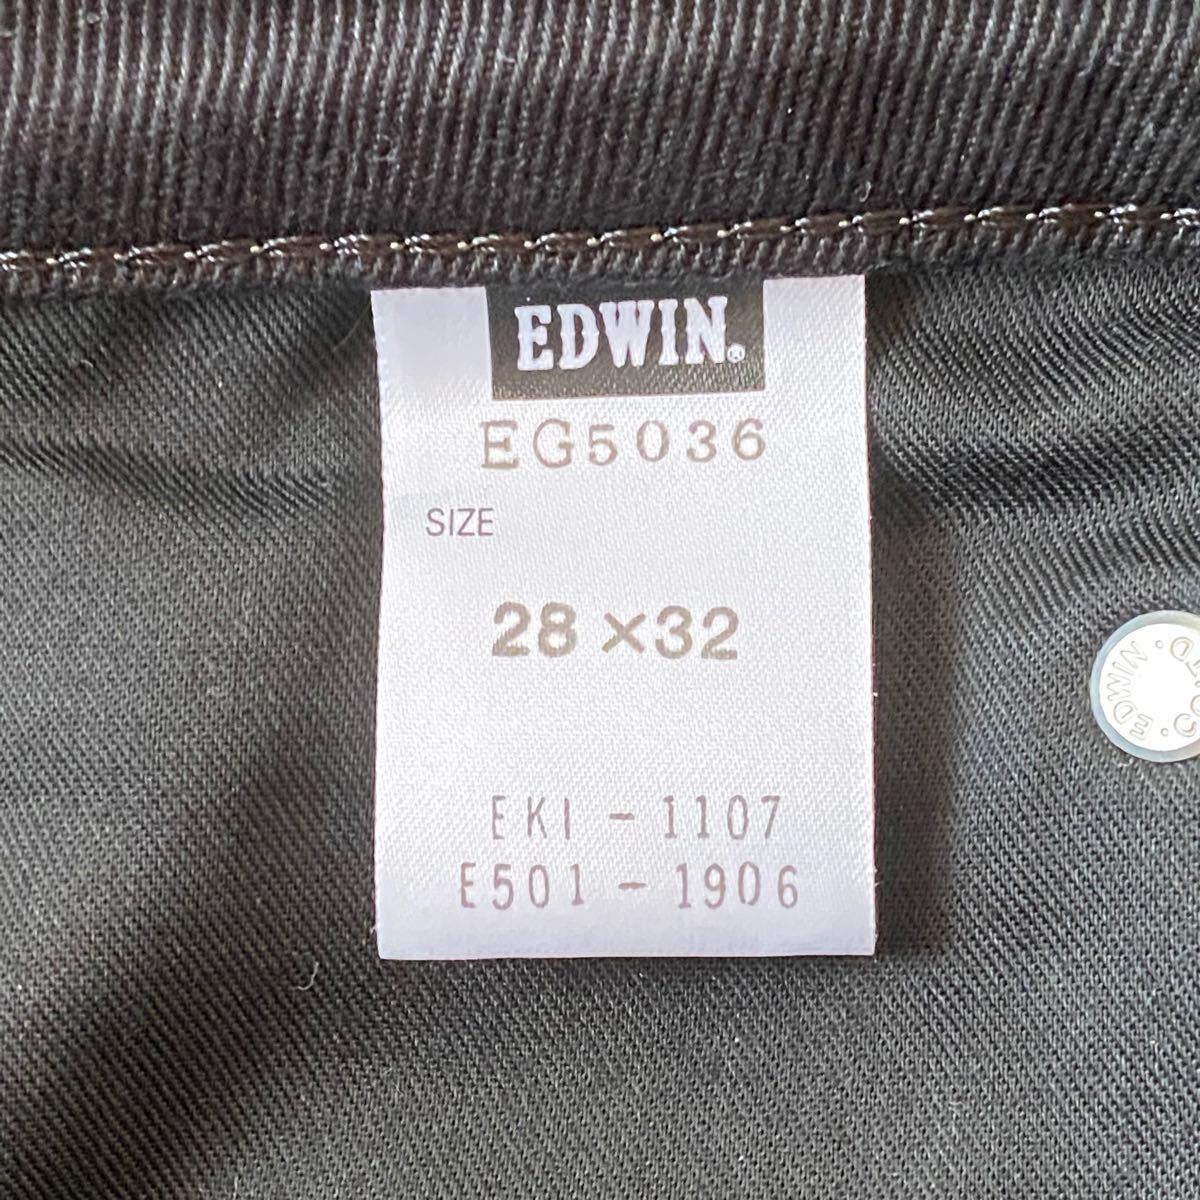 【美品】【値下げしました】EDWIN エドウィン EDGE503 デニムパンツ